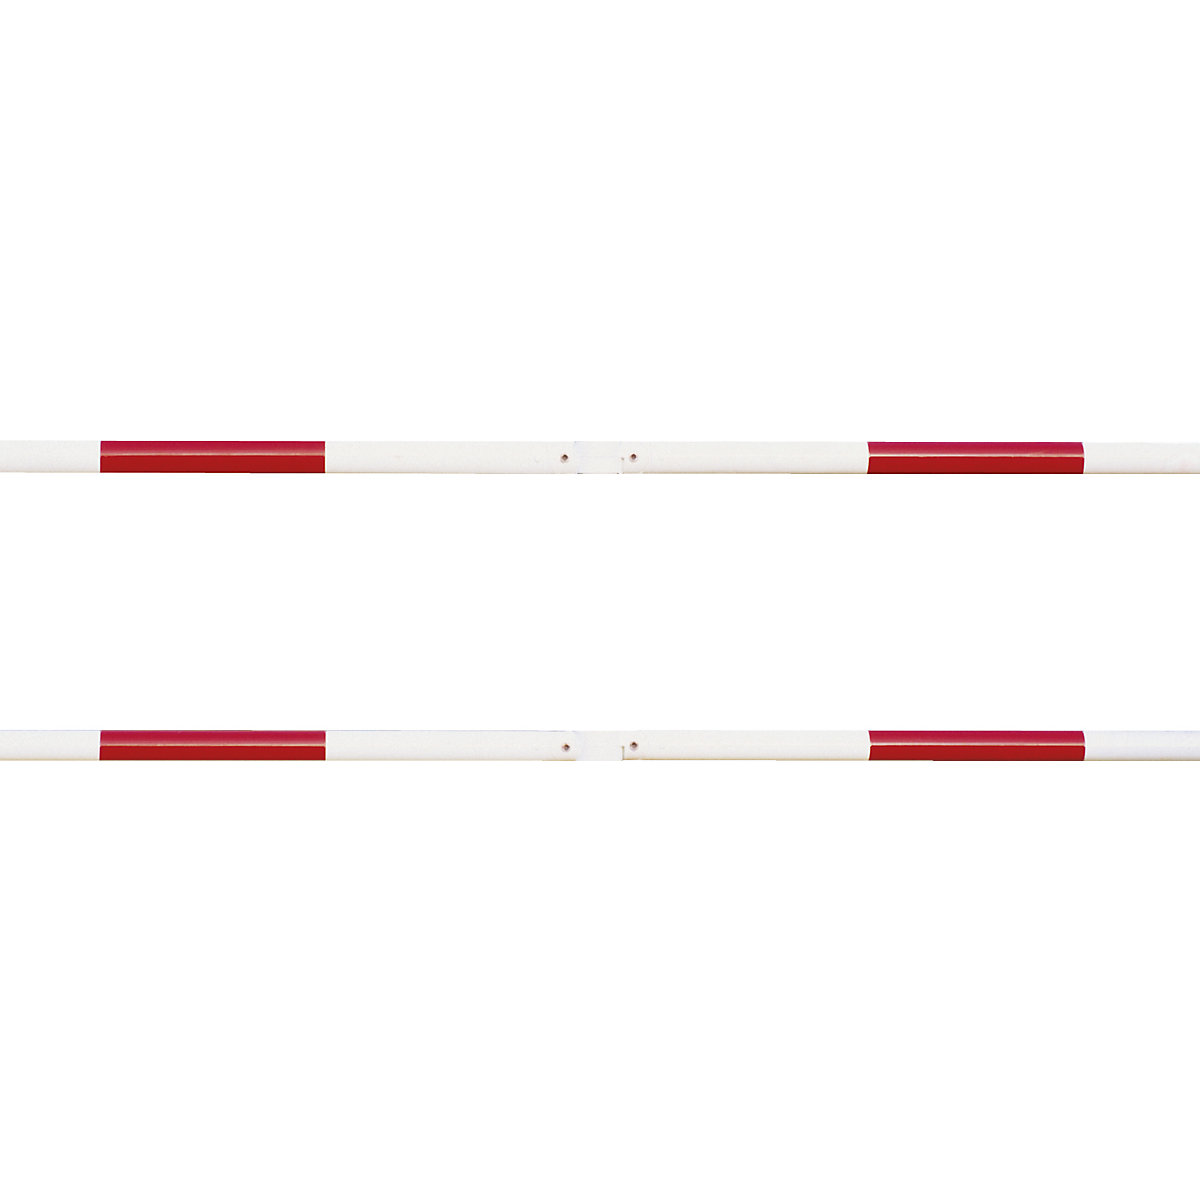 Systém zábradlí, příčná trubka Ø 48 mm, červeno/bílá, délka 1000 mm-10